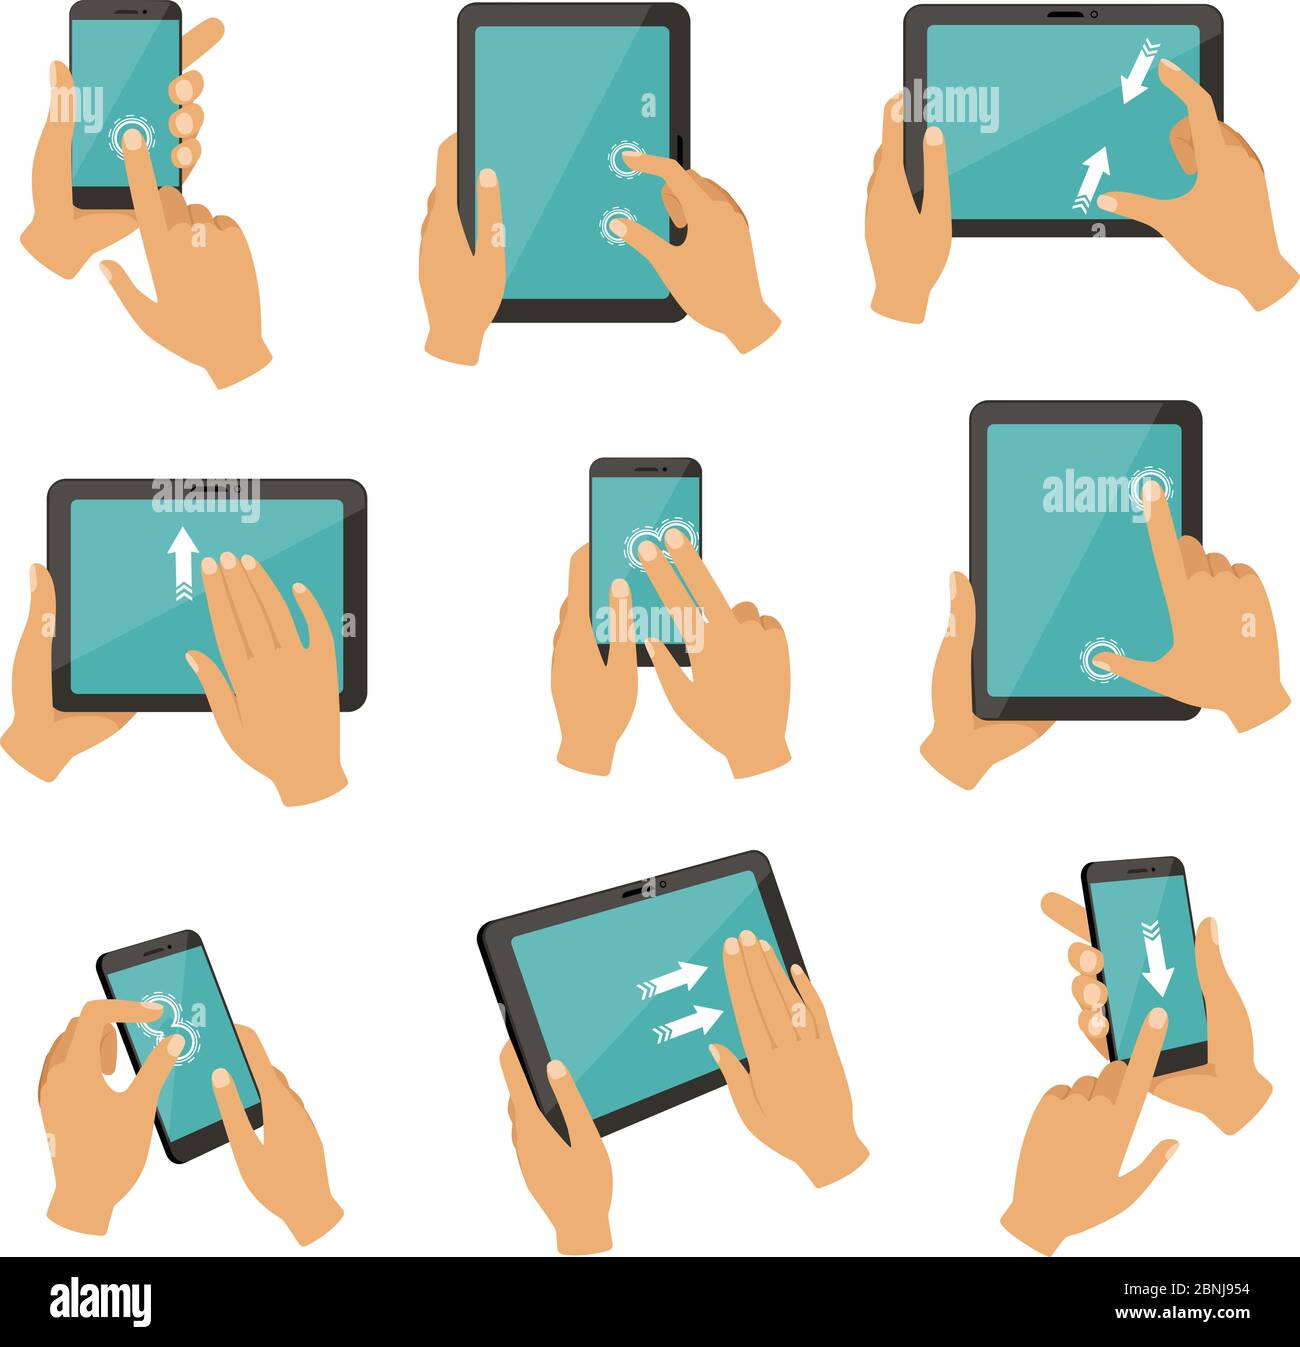 Illustrationen von Gesten zur Steuerung verschiedener Geräte Tablets und Smartphones Stock Vektor